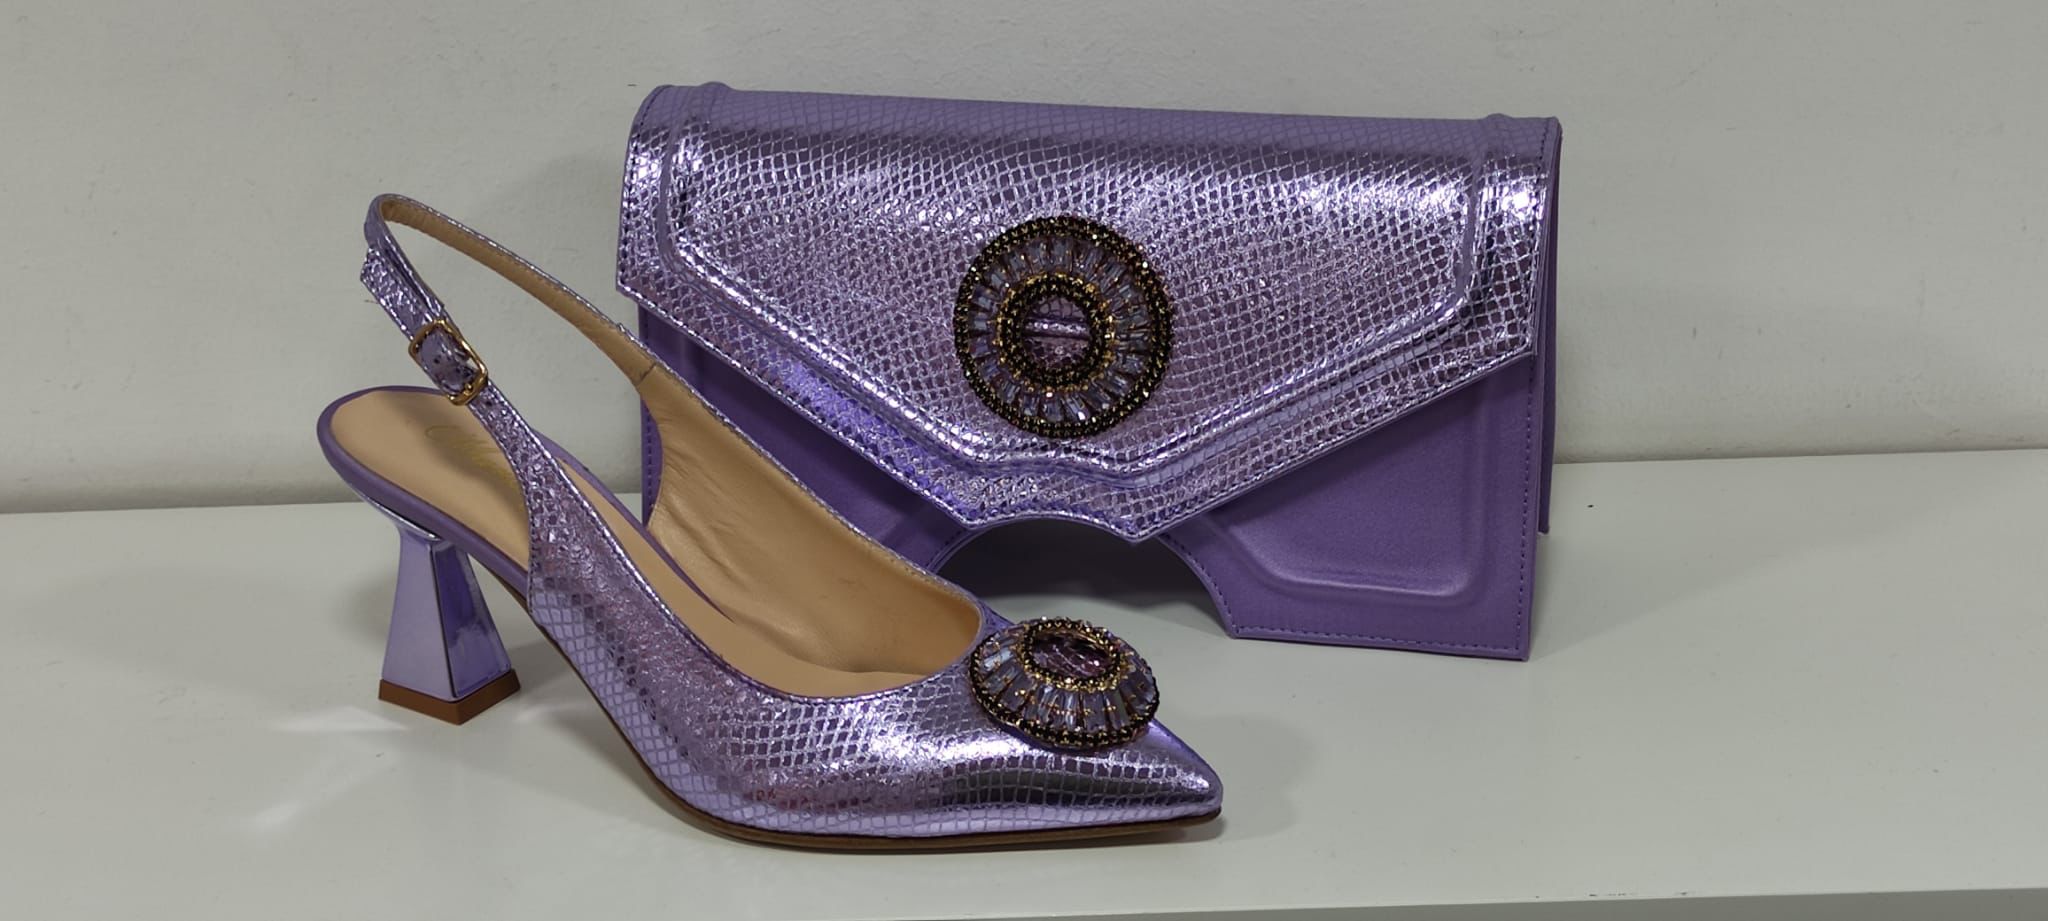 Real italian shoe and bag set - Godshandfashion - Lilac size 42 US size 11